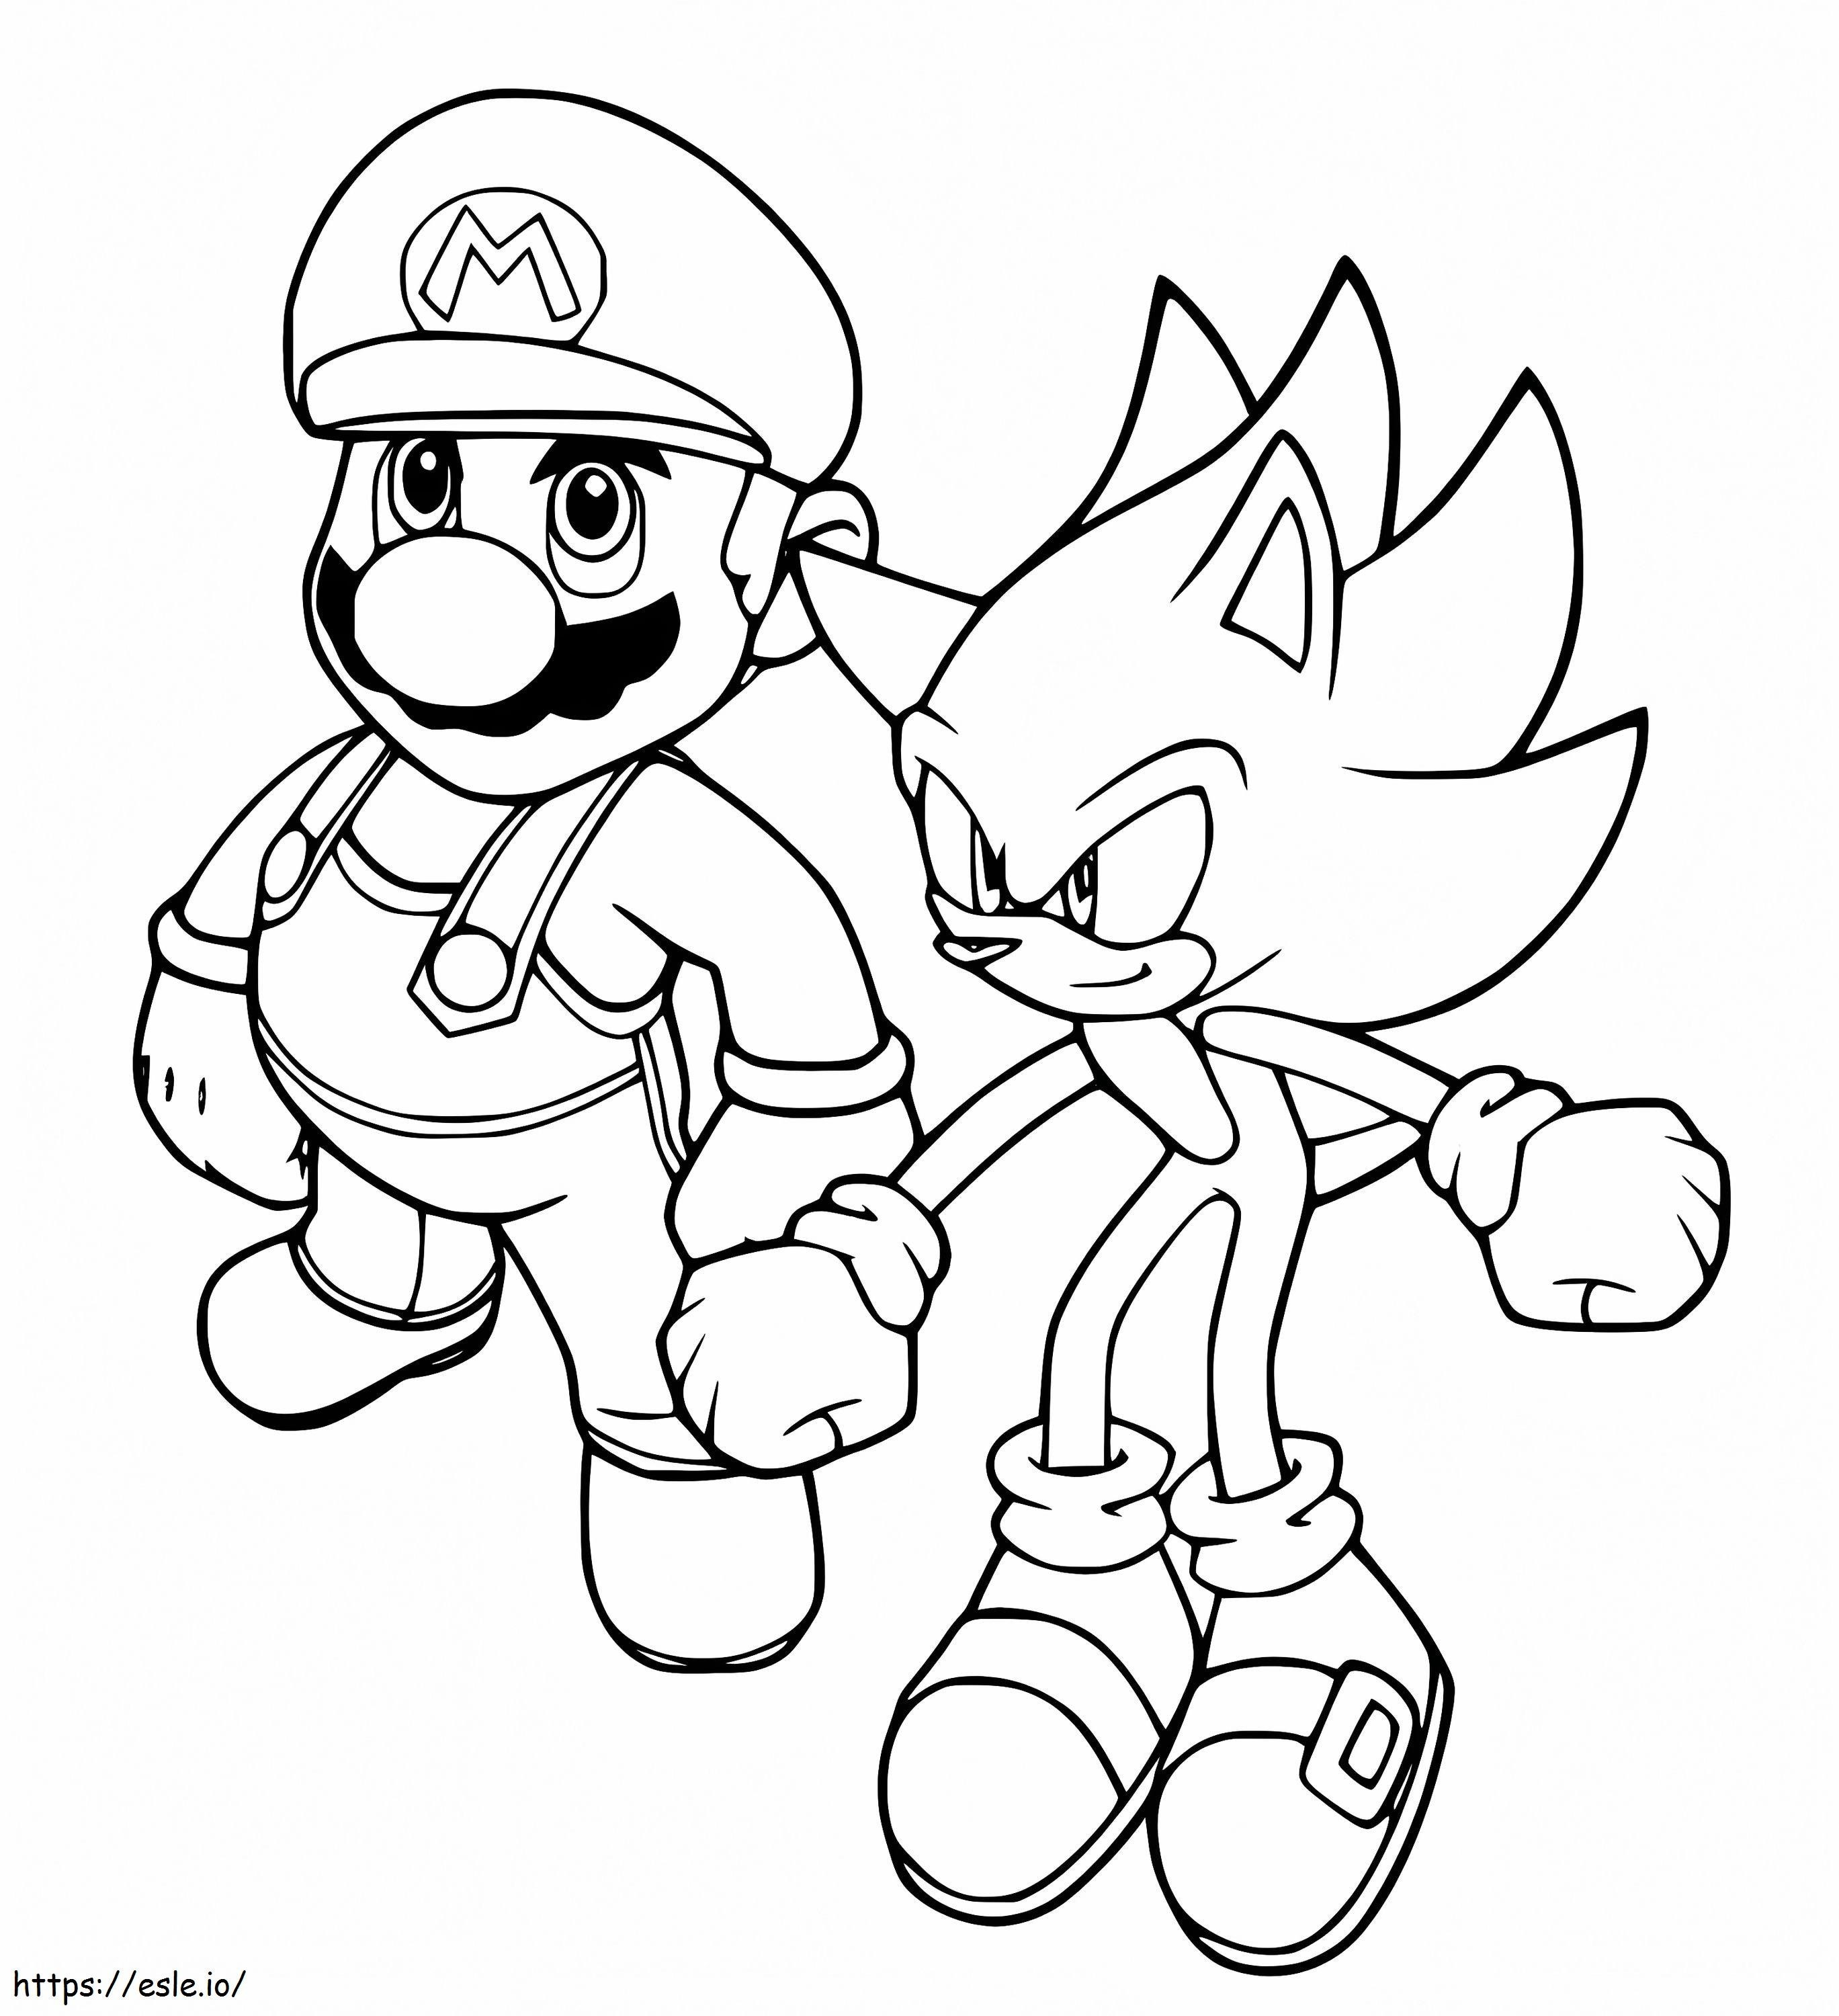 Mario e Sonic da colorare